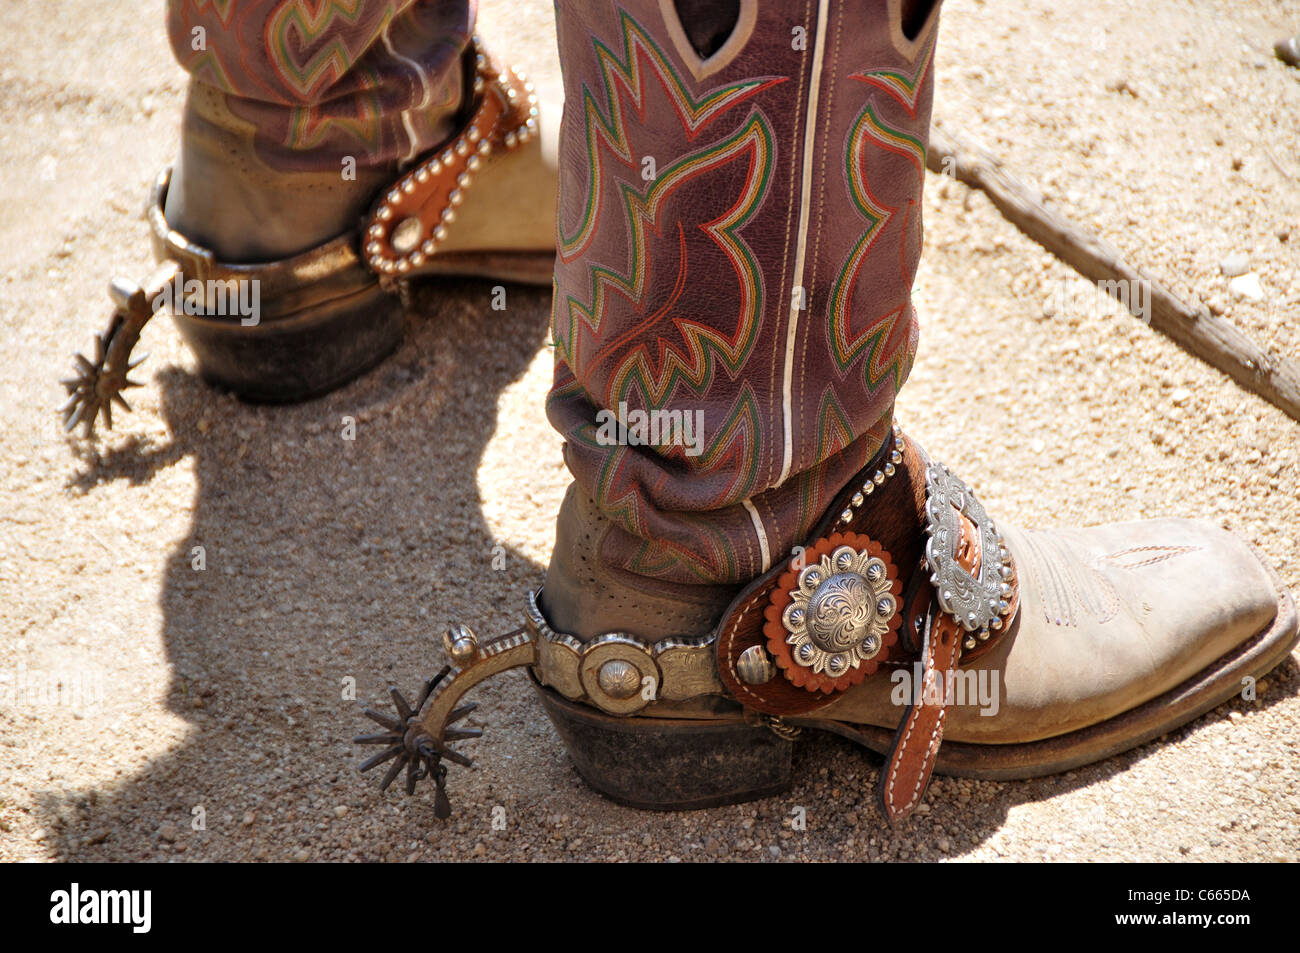 Cowboy-Stiefel mit Sporen Stockfotografie - Alamy